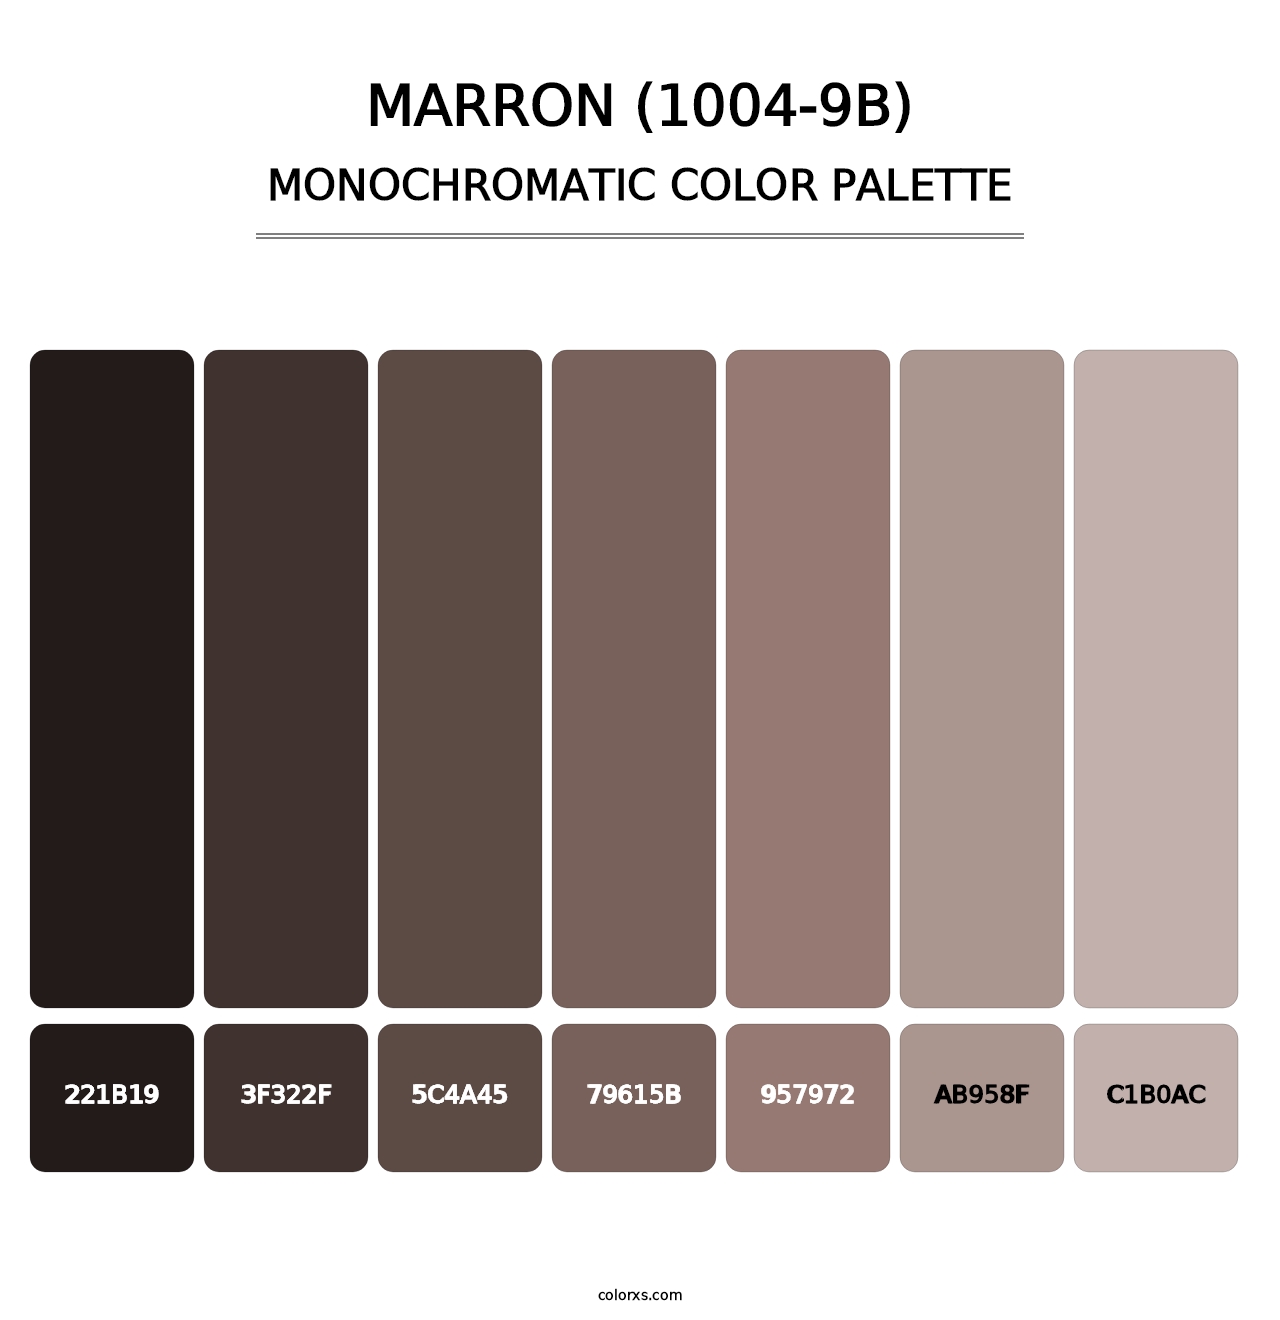 Marron (1004-9B) - Monochromatic Color Palette